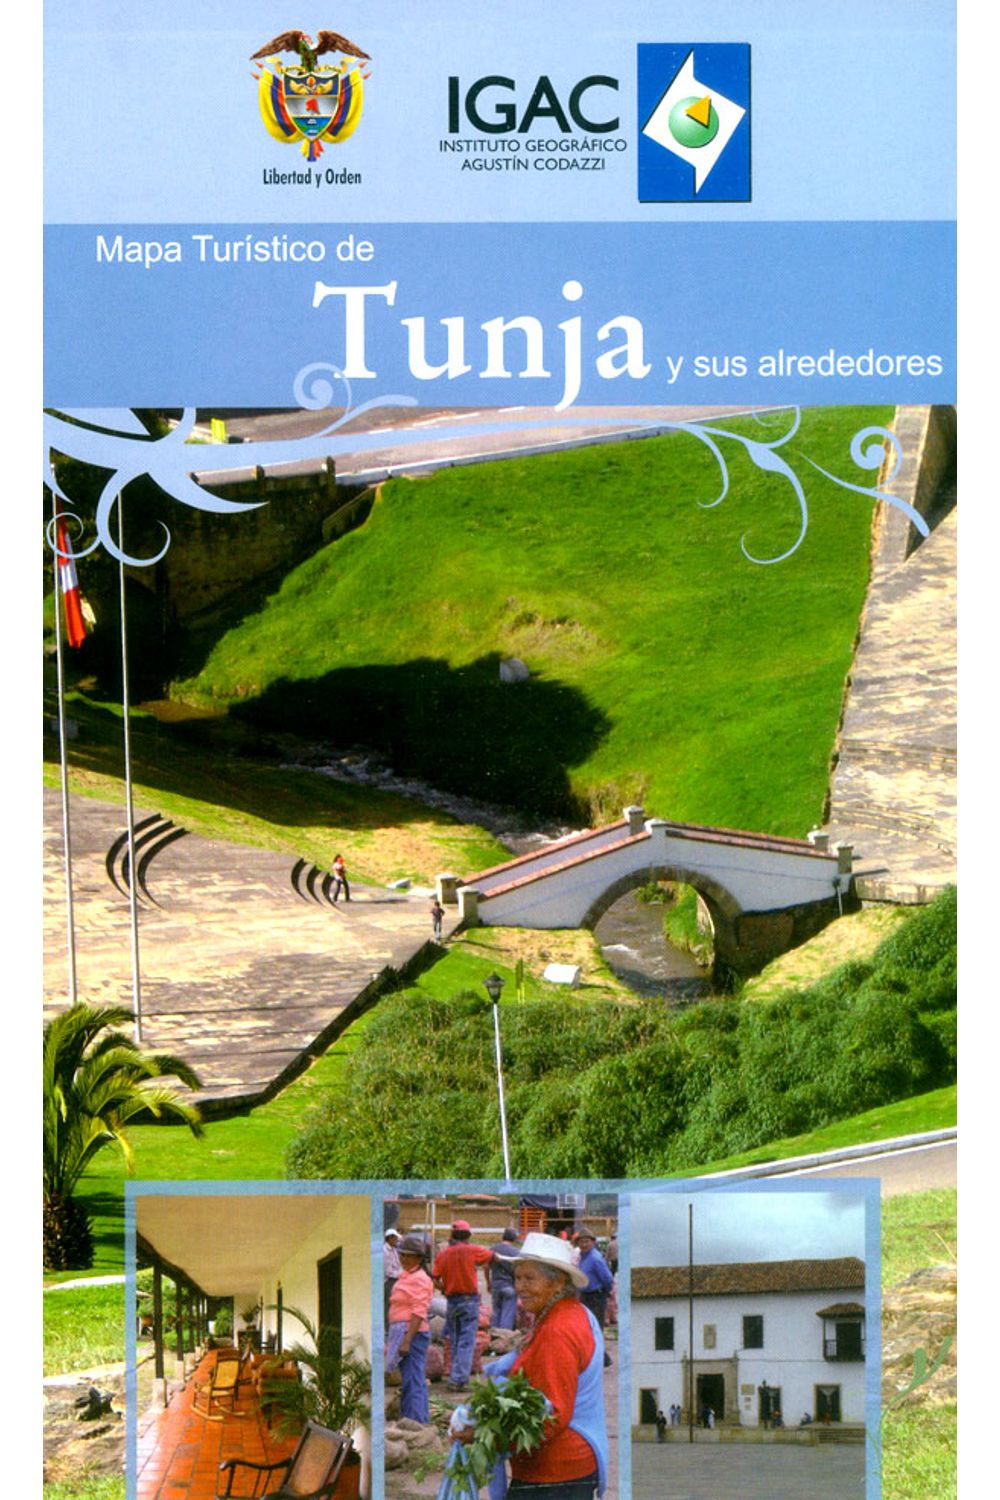 mapa-turistico-de-tunja-y-sus-alrededores-7703476002532-igac